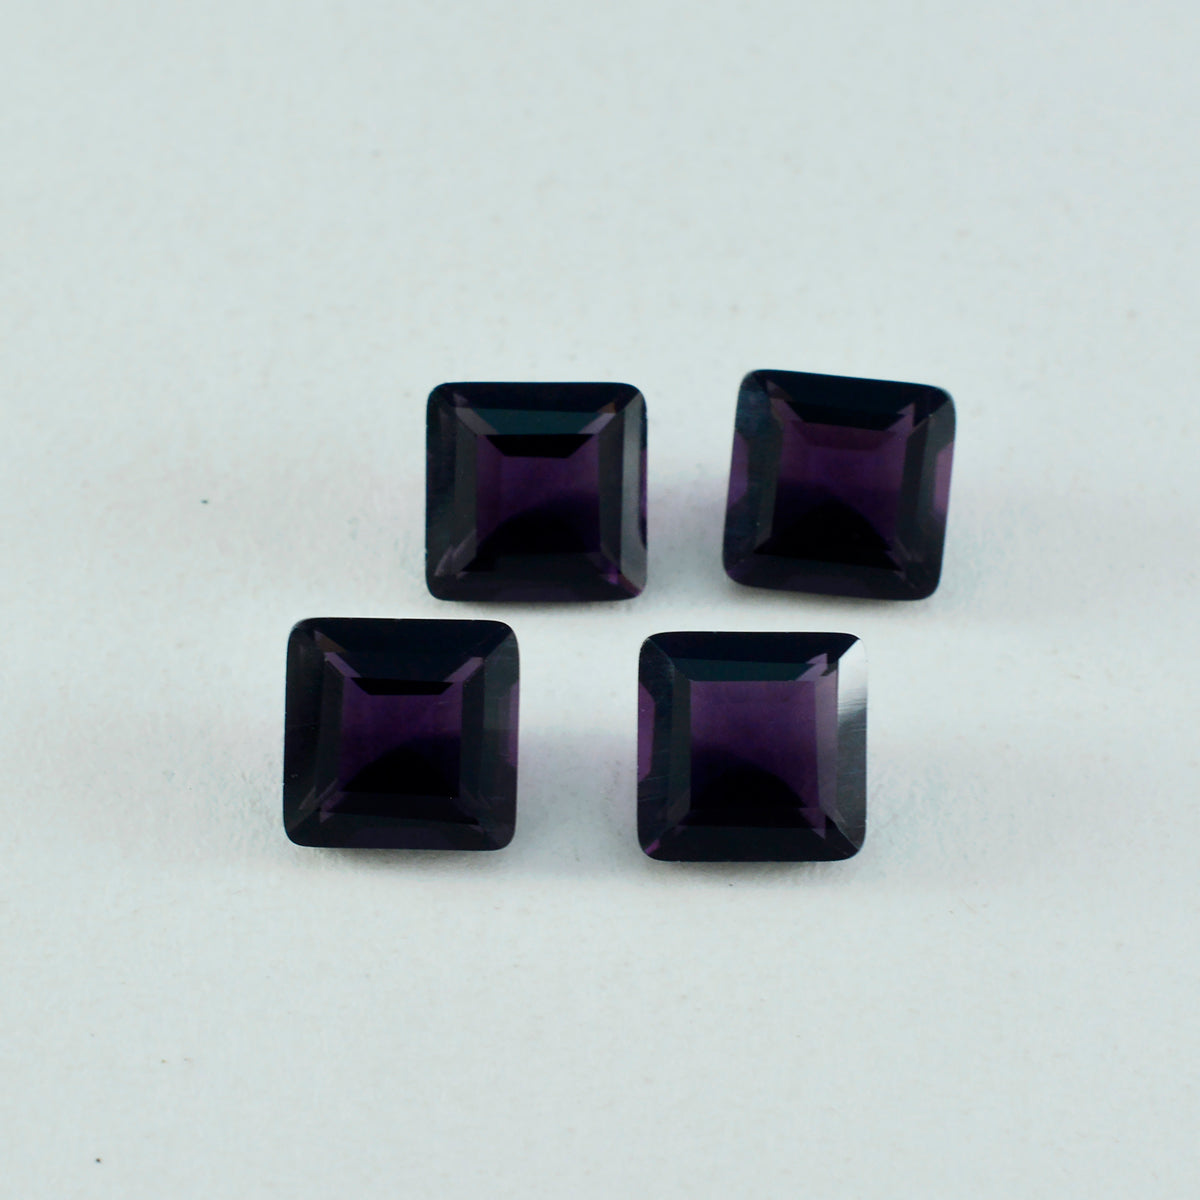 Riyogems 1 Stück violetter Amethyst mit CZ, facettiert, 13 x 13 mm, quadratische Form, Edelstein in AA-Qualität